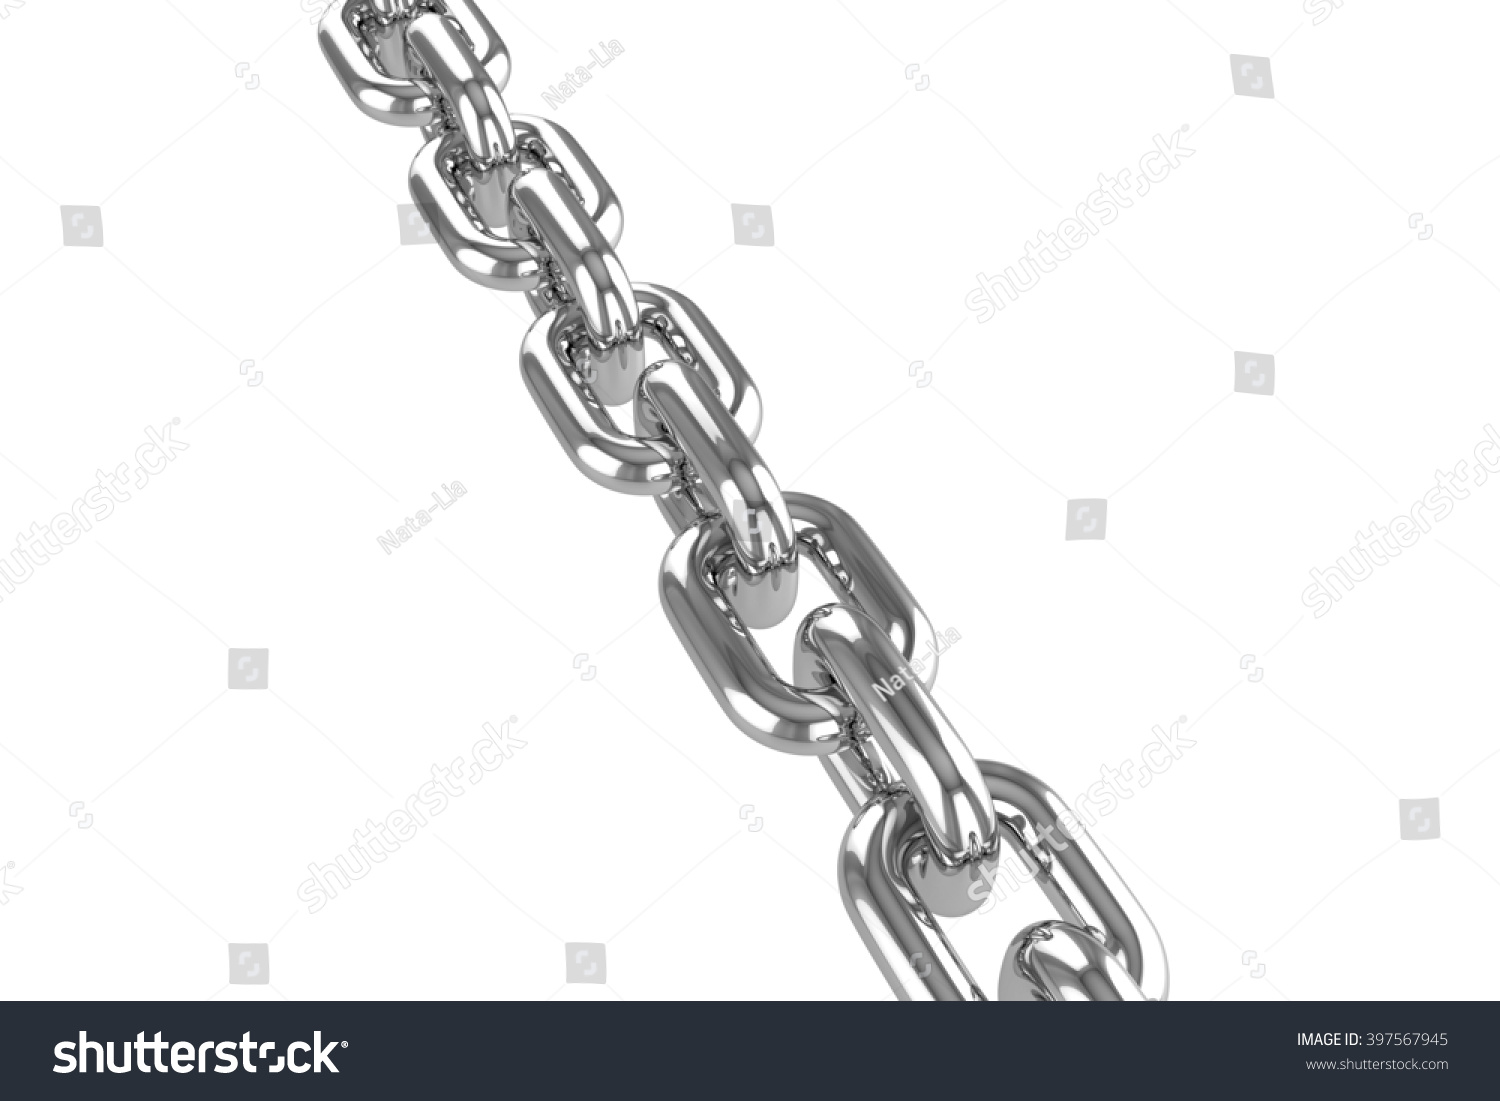 Render Stainless Steel Chain 3d Rendering Stock Illustration 397567945 ...